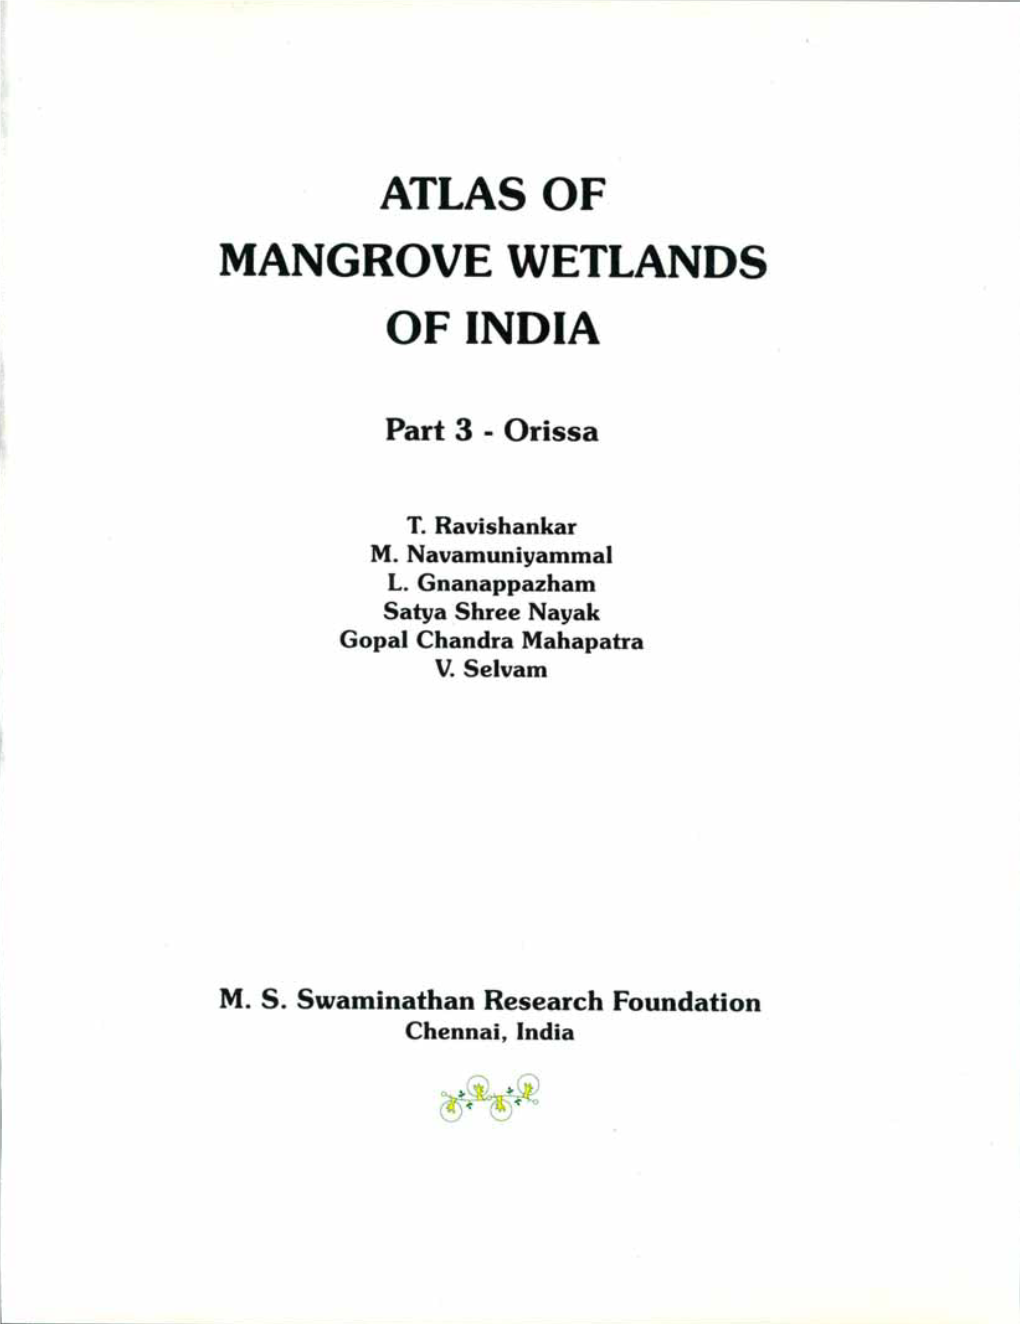 Mangrove Wetlands of Orissa